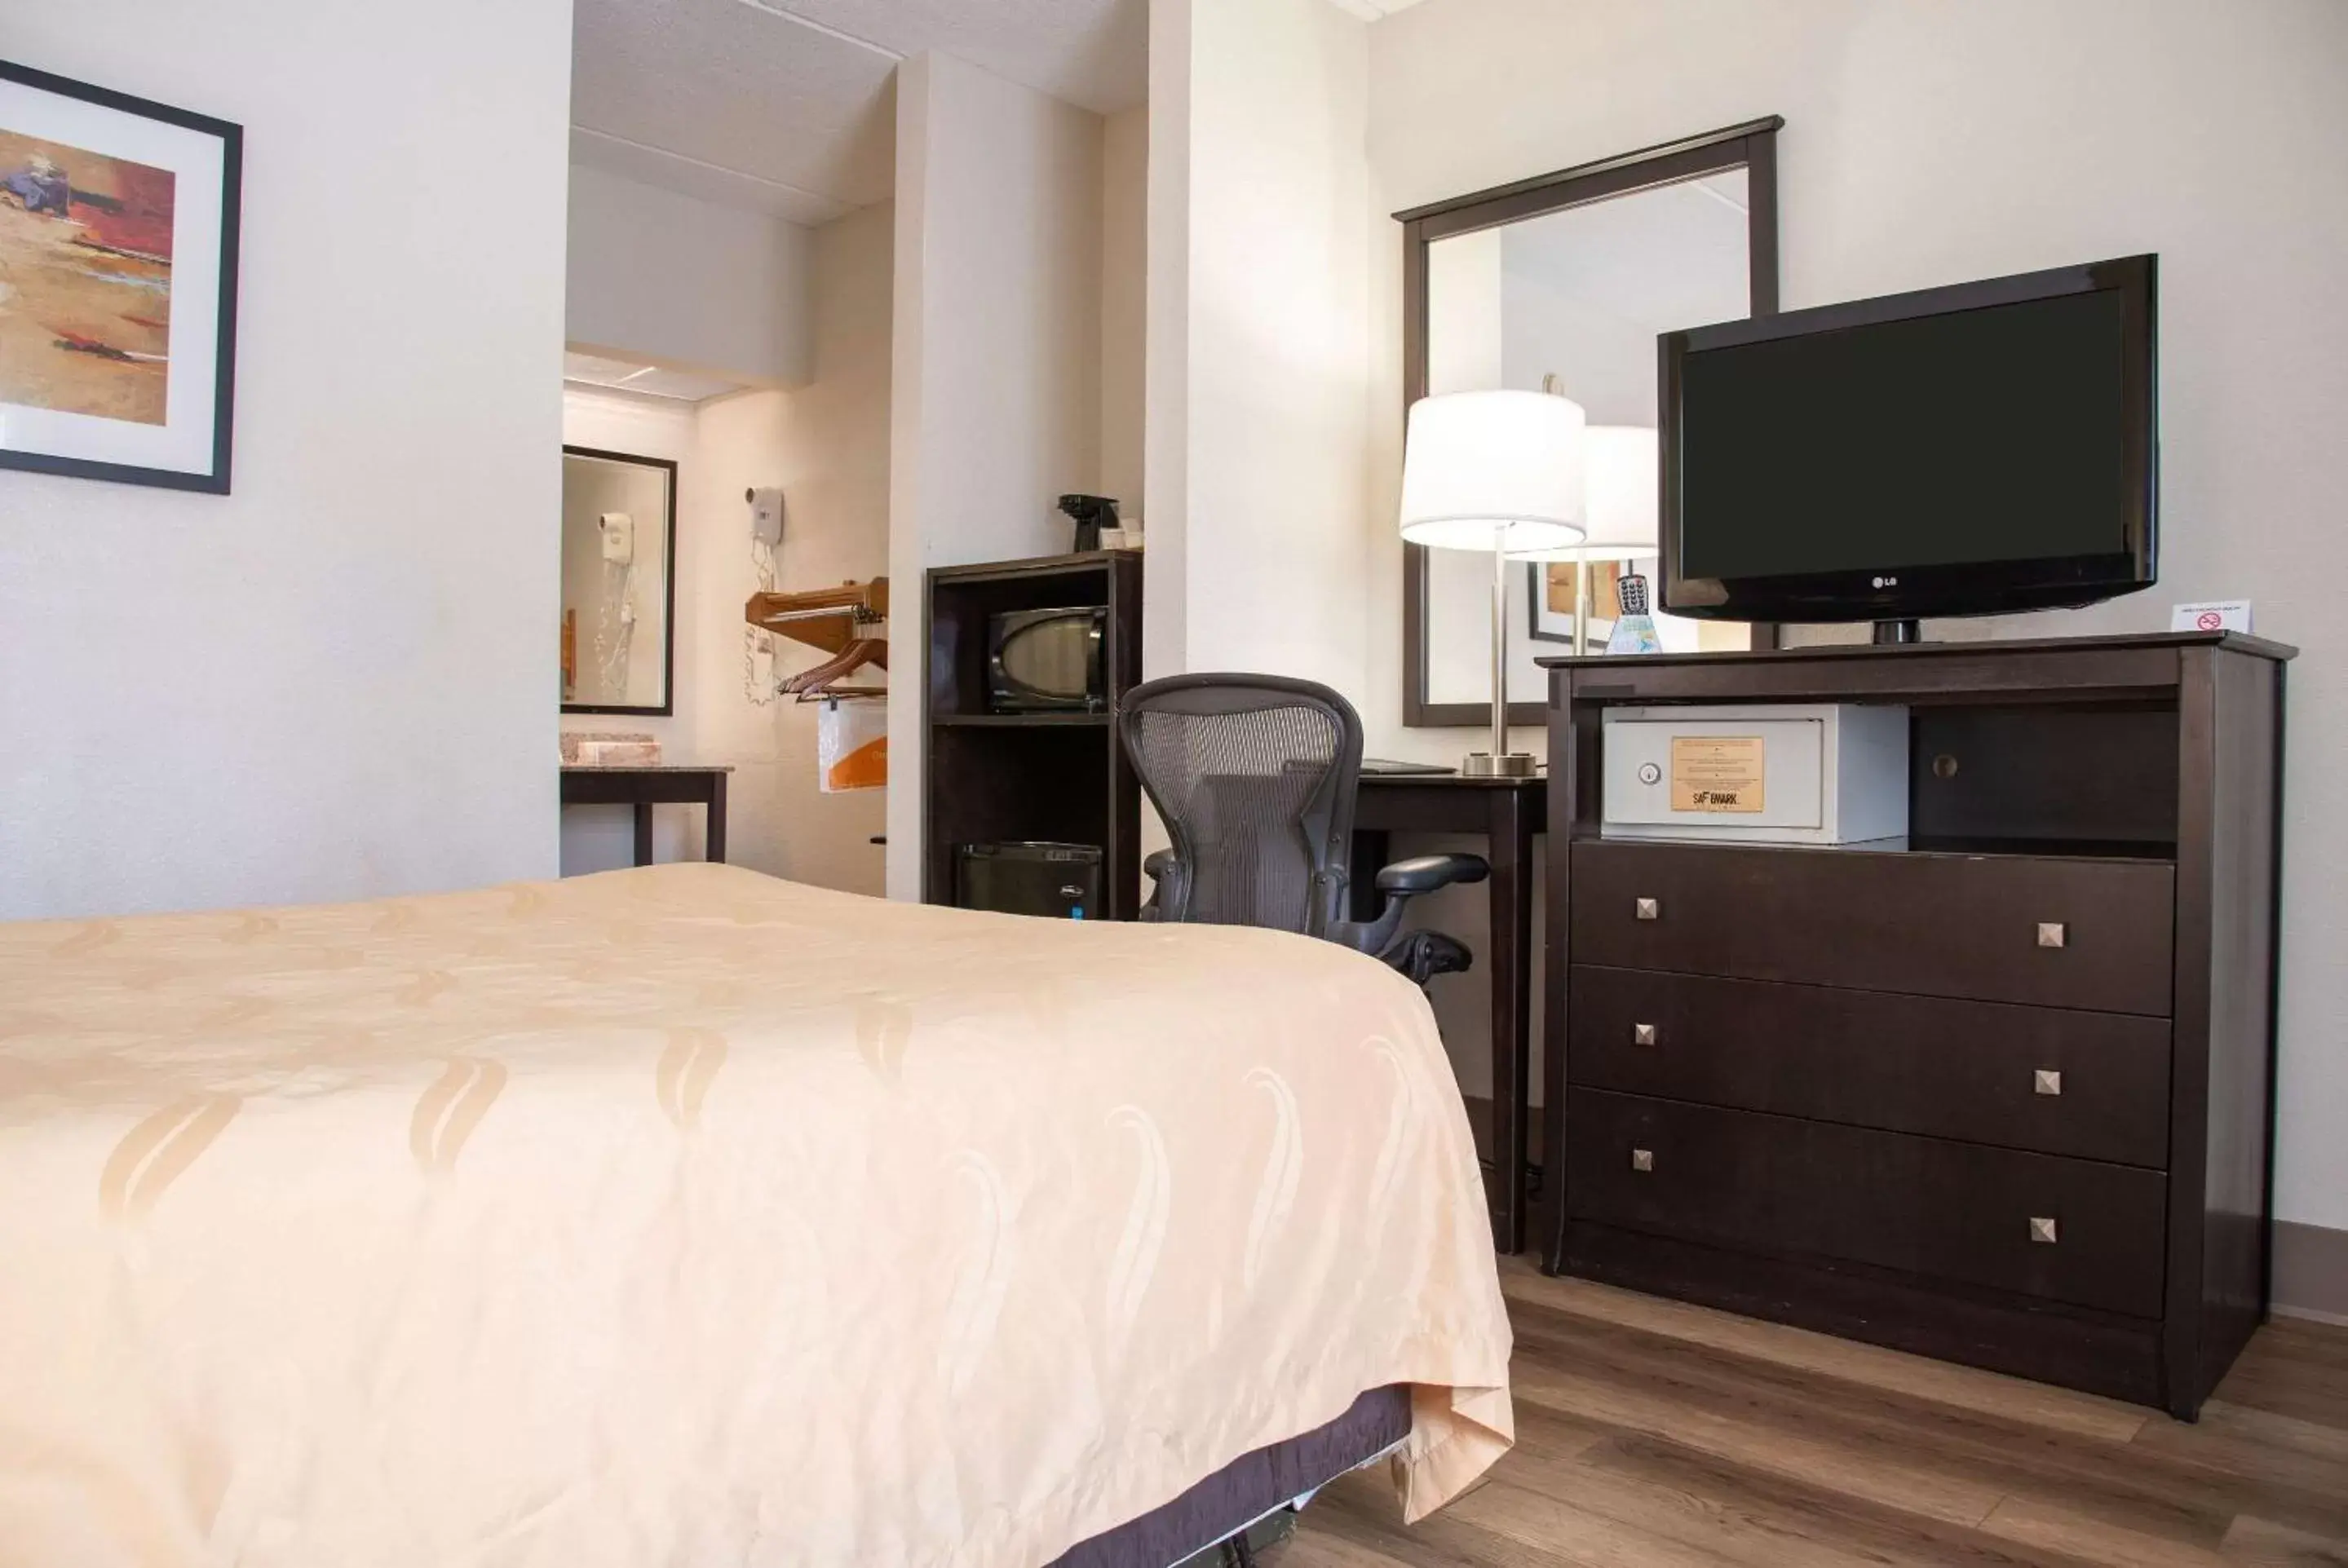 Bedroom, TV/Entertainment Center in Quality Inn & Suites Aiken